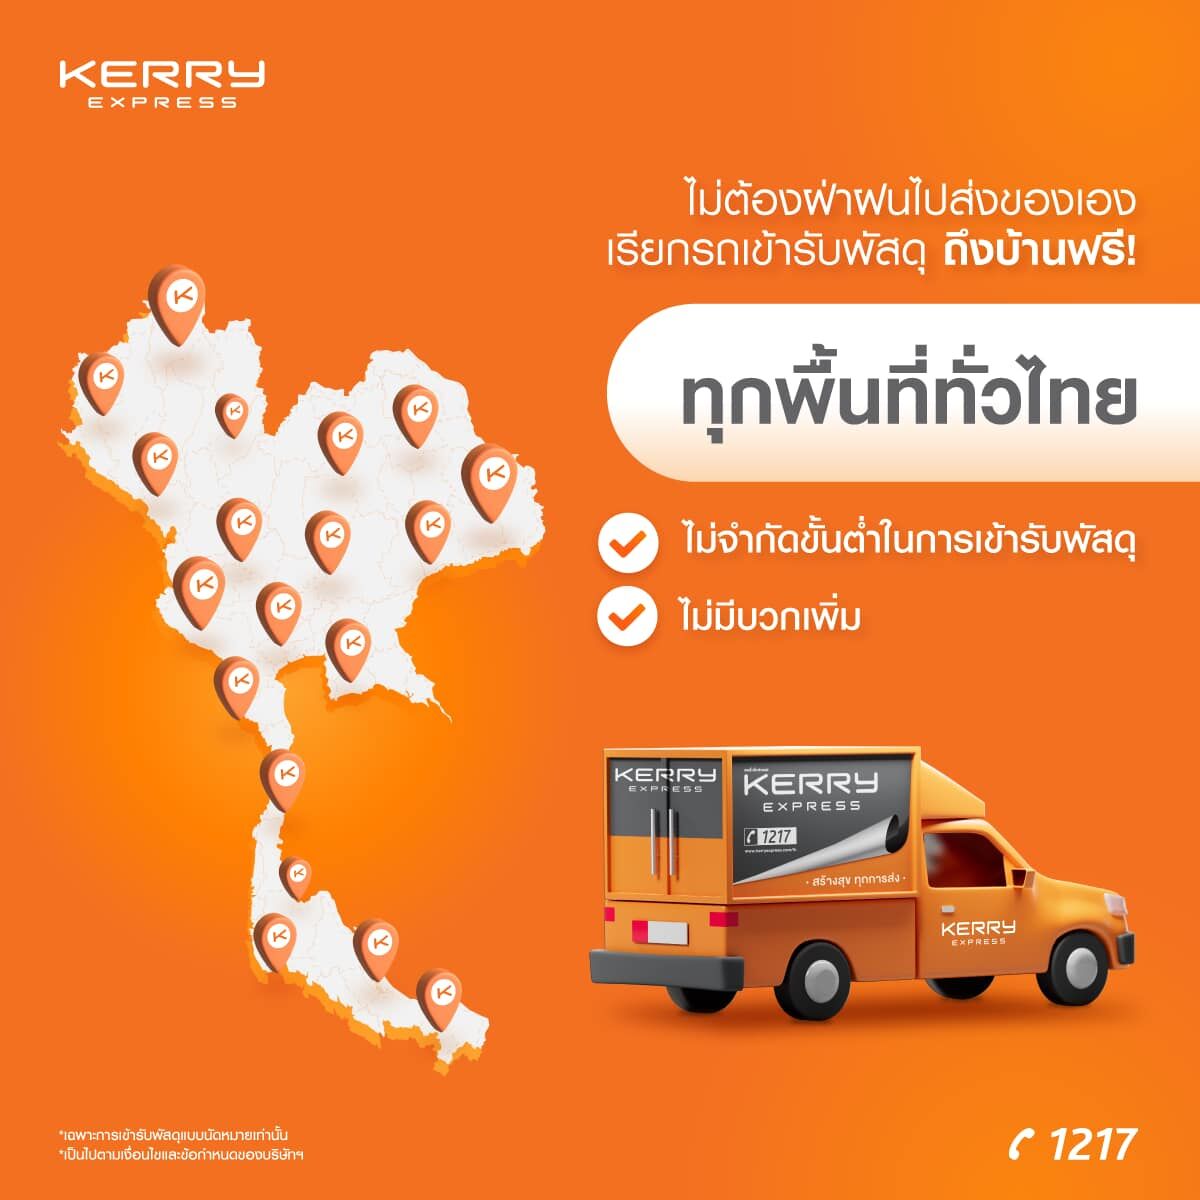 5 บริษัทโลจิสติกส์ ขนส่งยอดนิยมในไทย ประจำปี 2565 | Thaiger ข่าวไทย